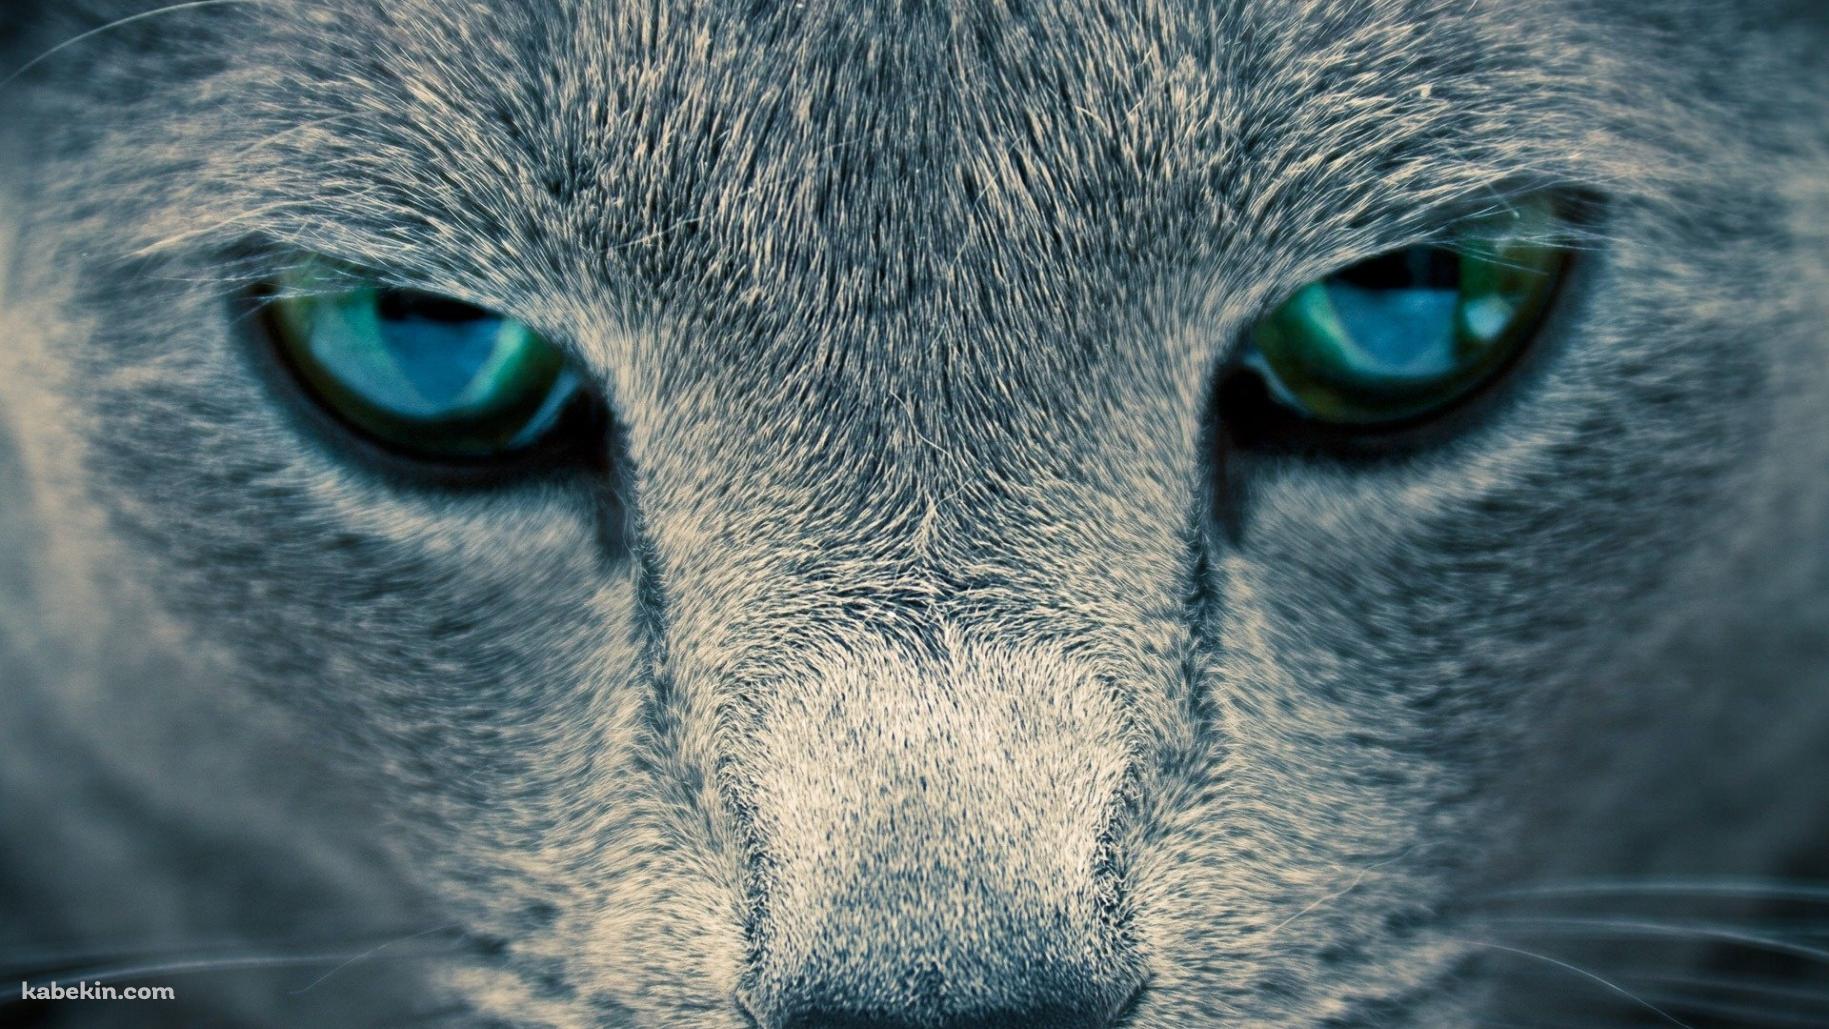 凄みのある青い目の猫の壁紙(1829px x 1029px) 高画質 PC・デスクトップ用